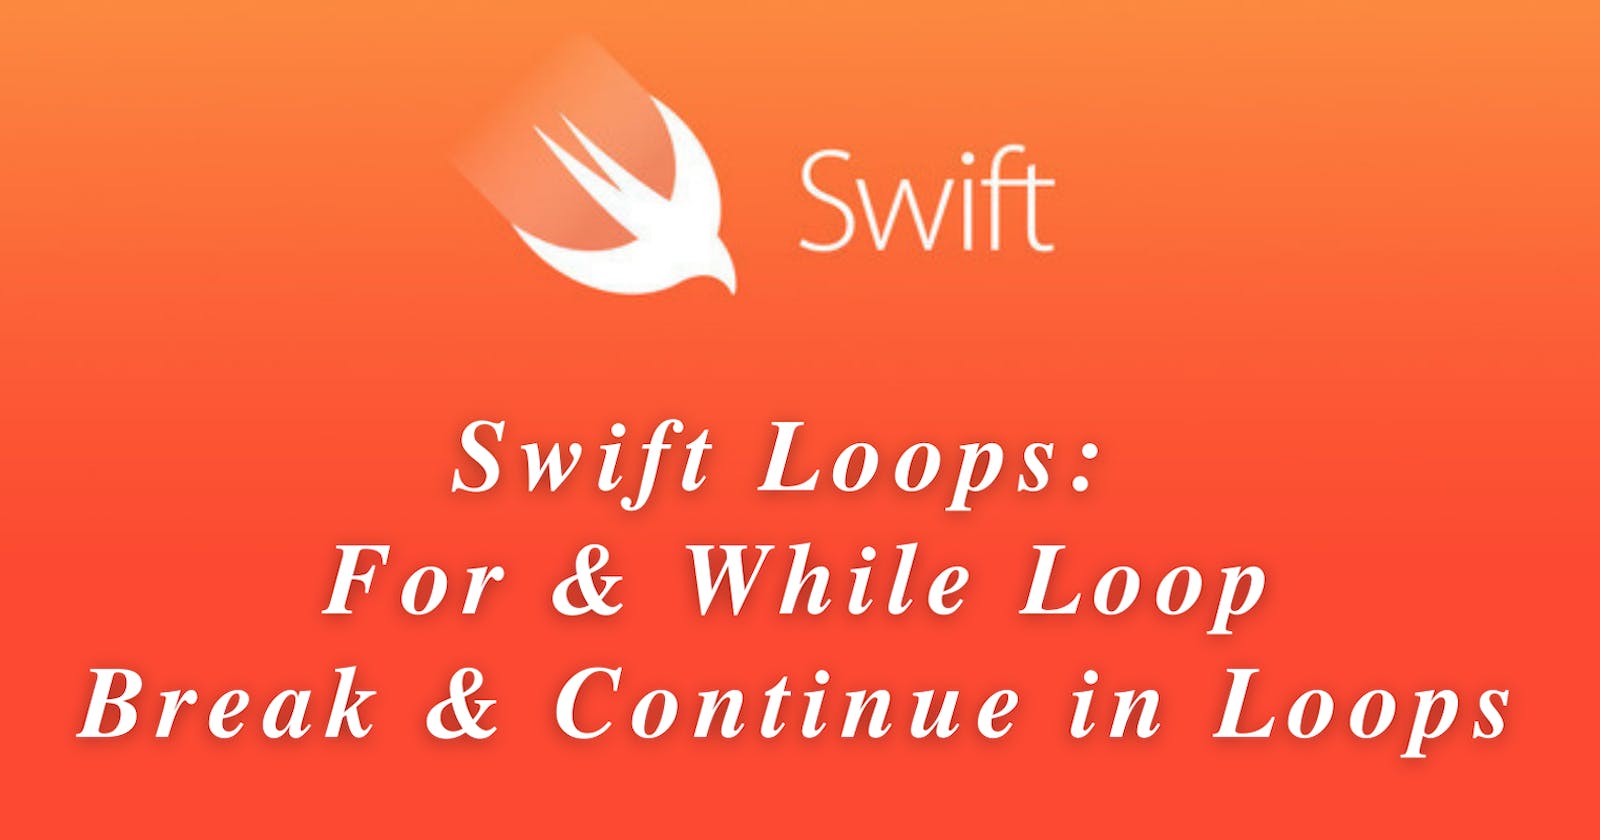 Swift Loops: For & While Loop, Break & Continue in Loops